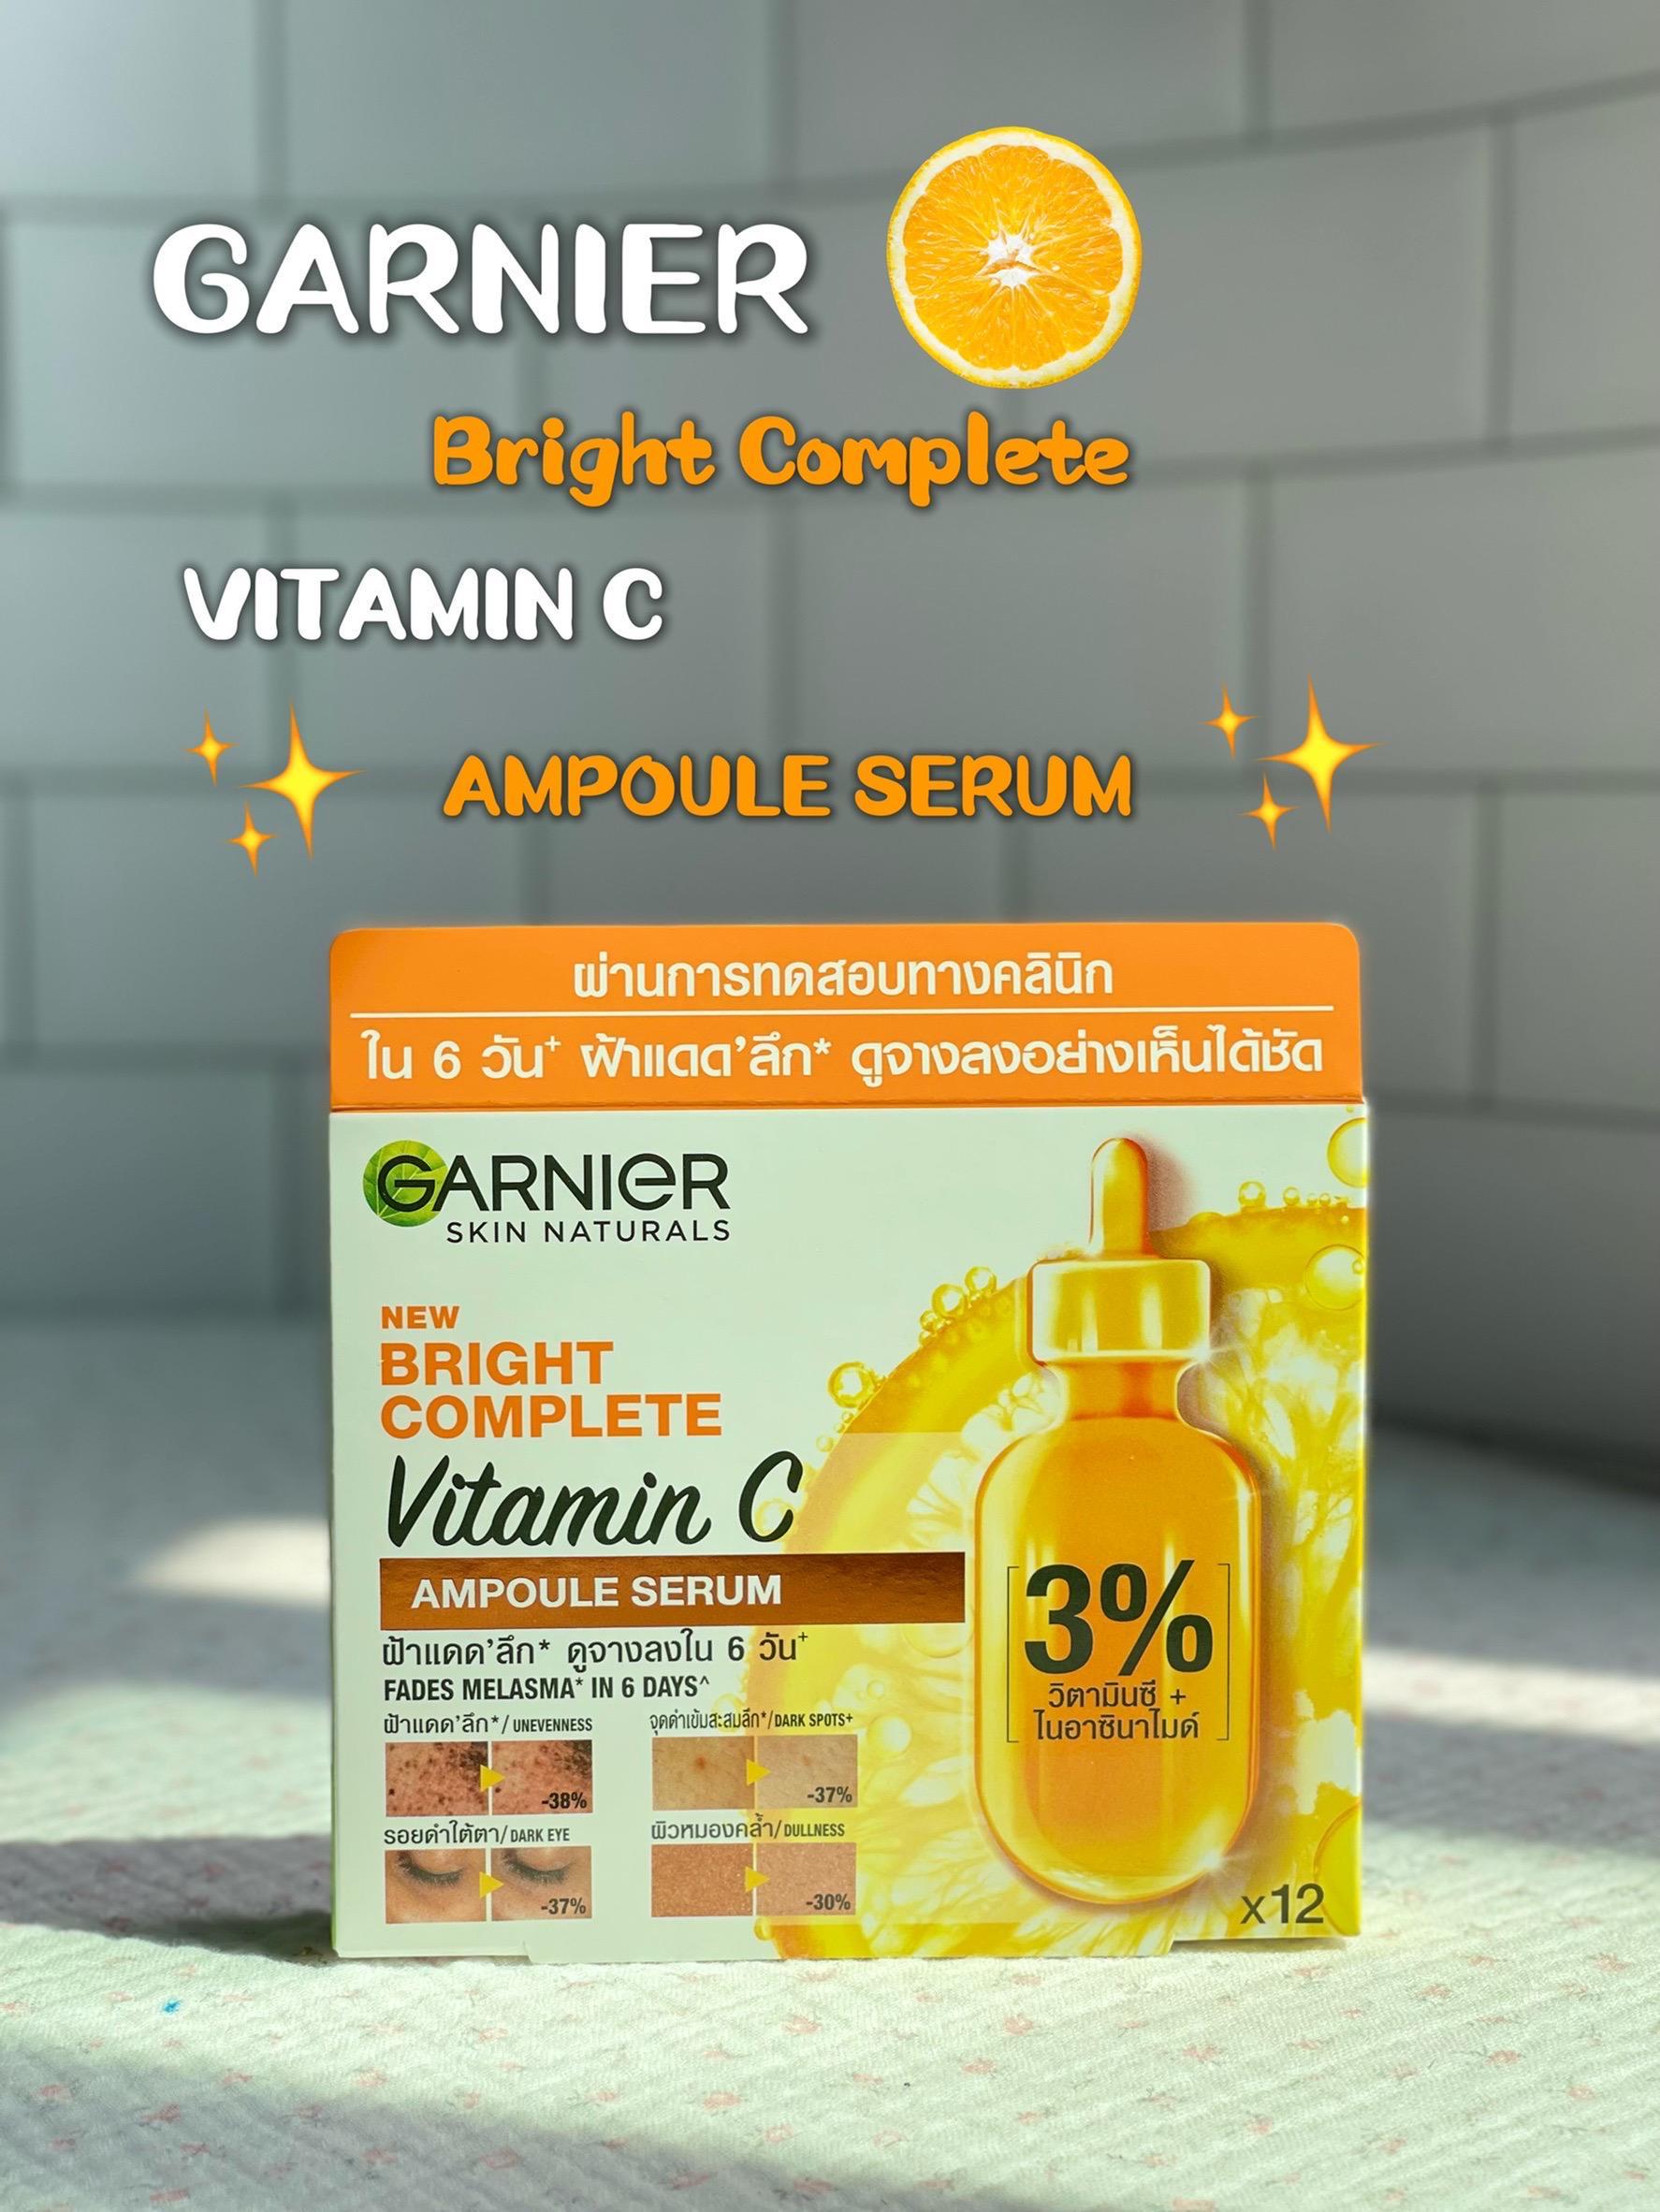 ภาพหน้าปก Garnier Ampoule Serum ช่วยให้ฝ้าจางลงใน 6 วันจริงมั้ย? ที่:0